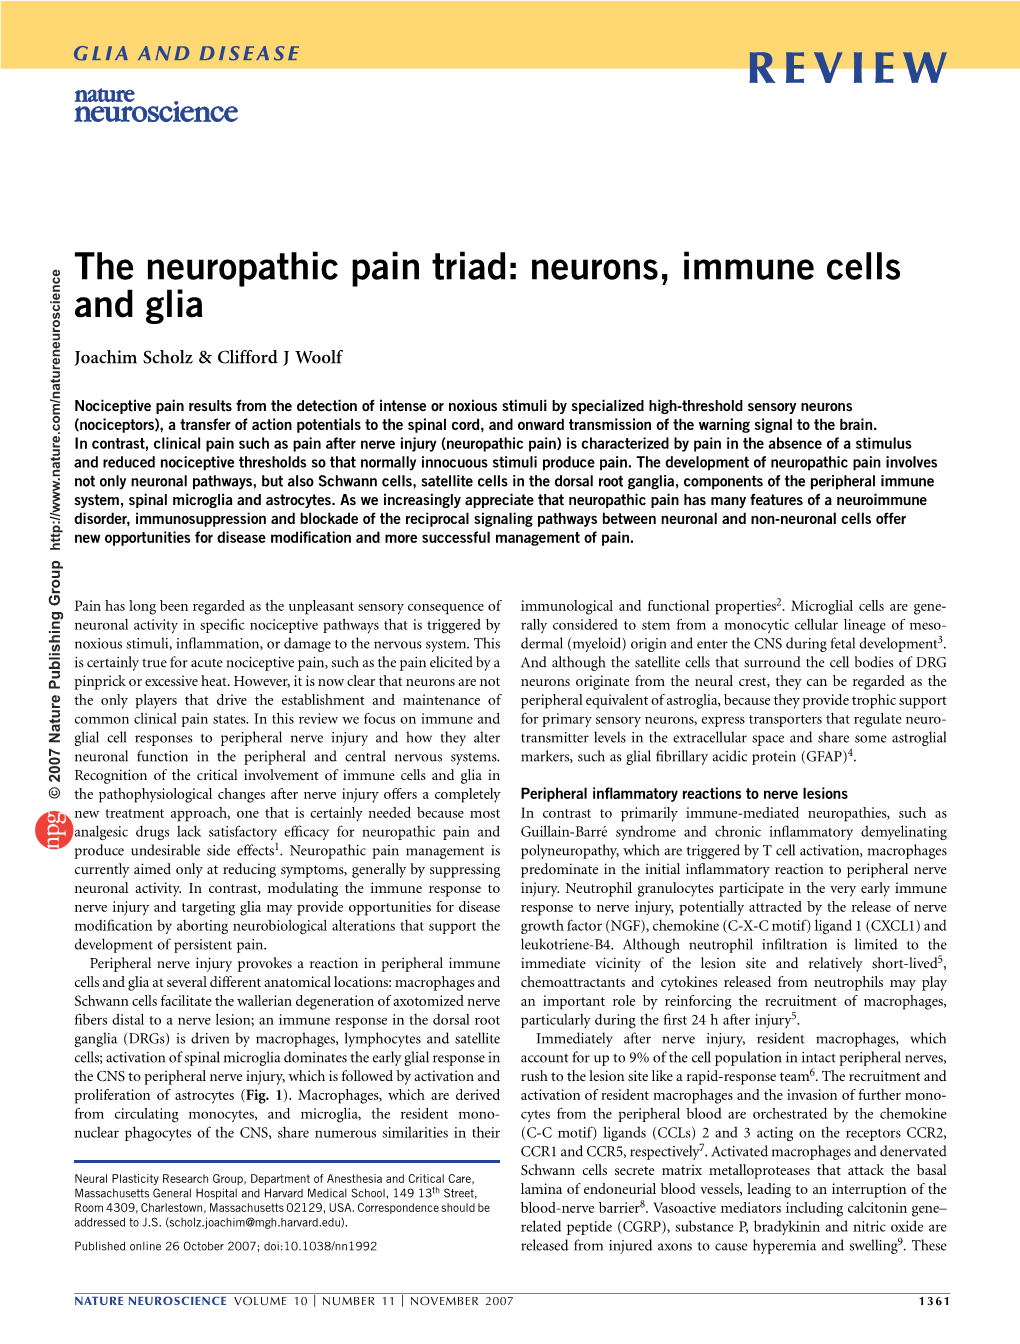 The Neuropathic Pain Triad: Neurons, Immune Cells and Glia